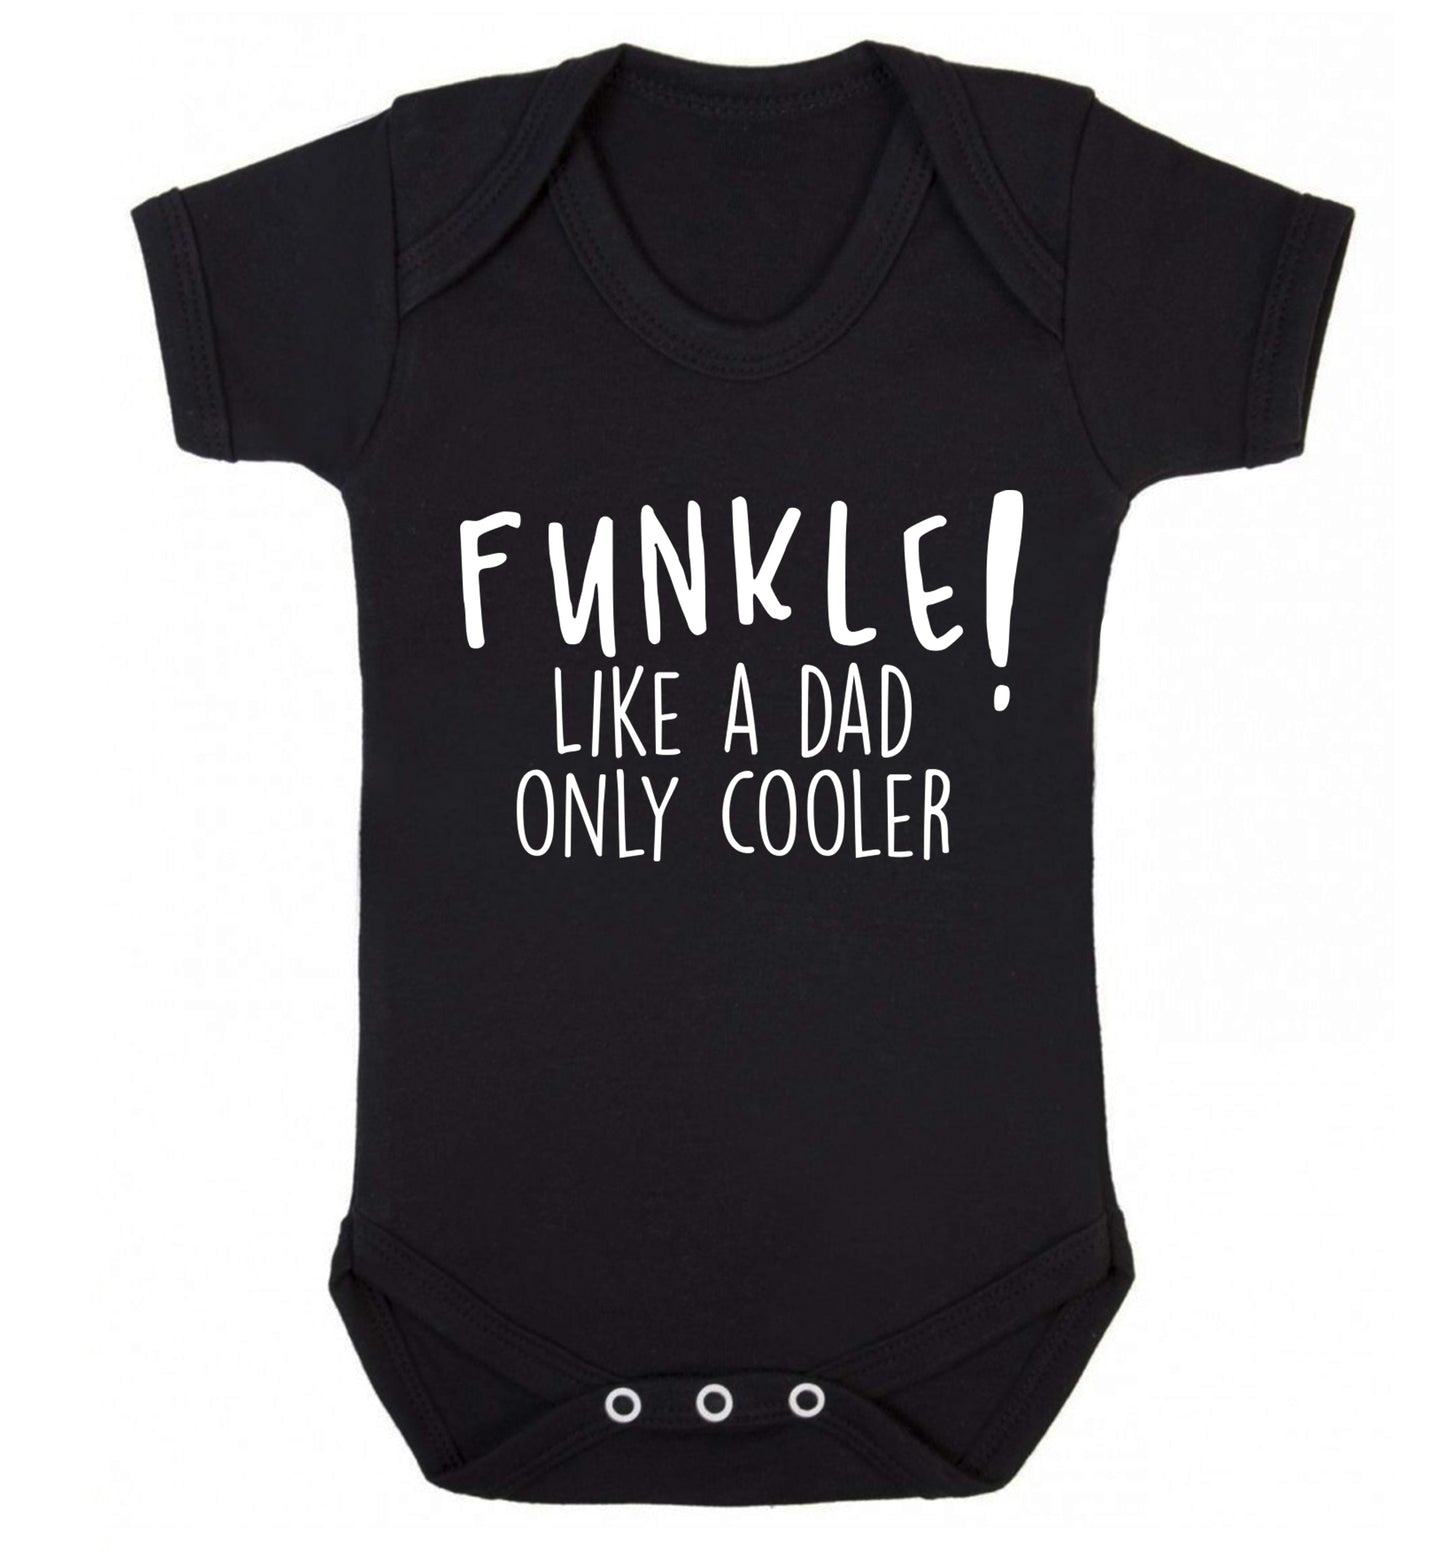 Funkle Like a Dad Only Cooler Baby Vest black 18-24 months